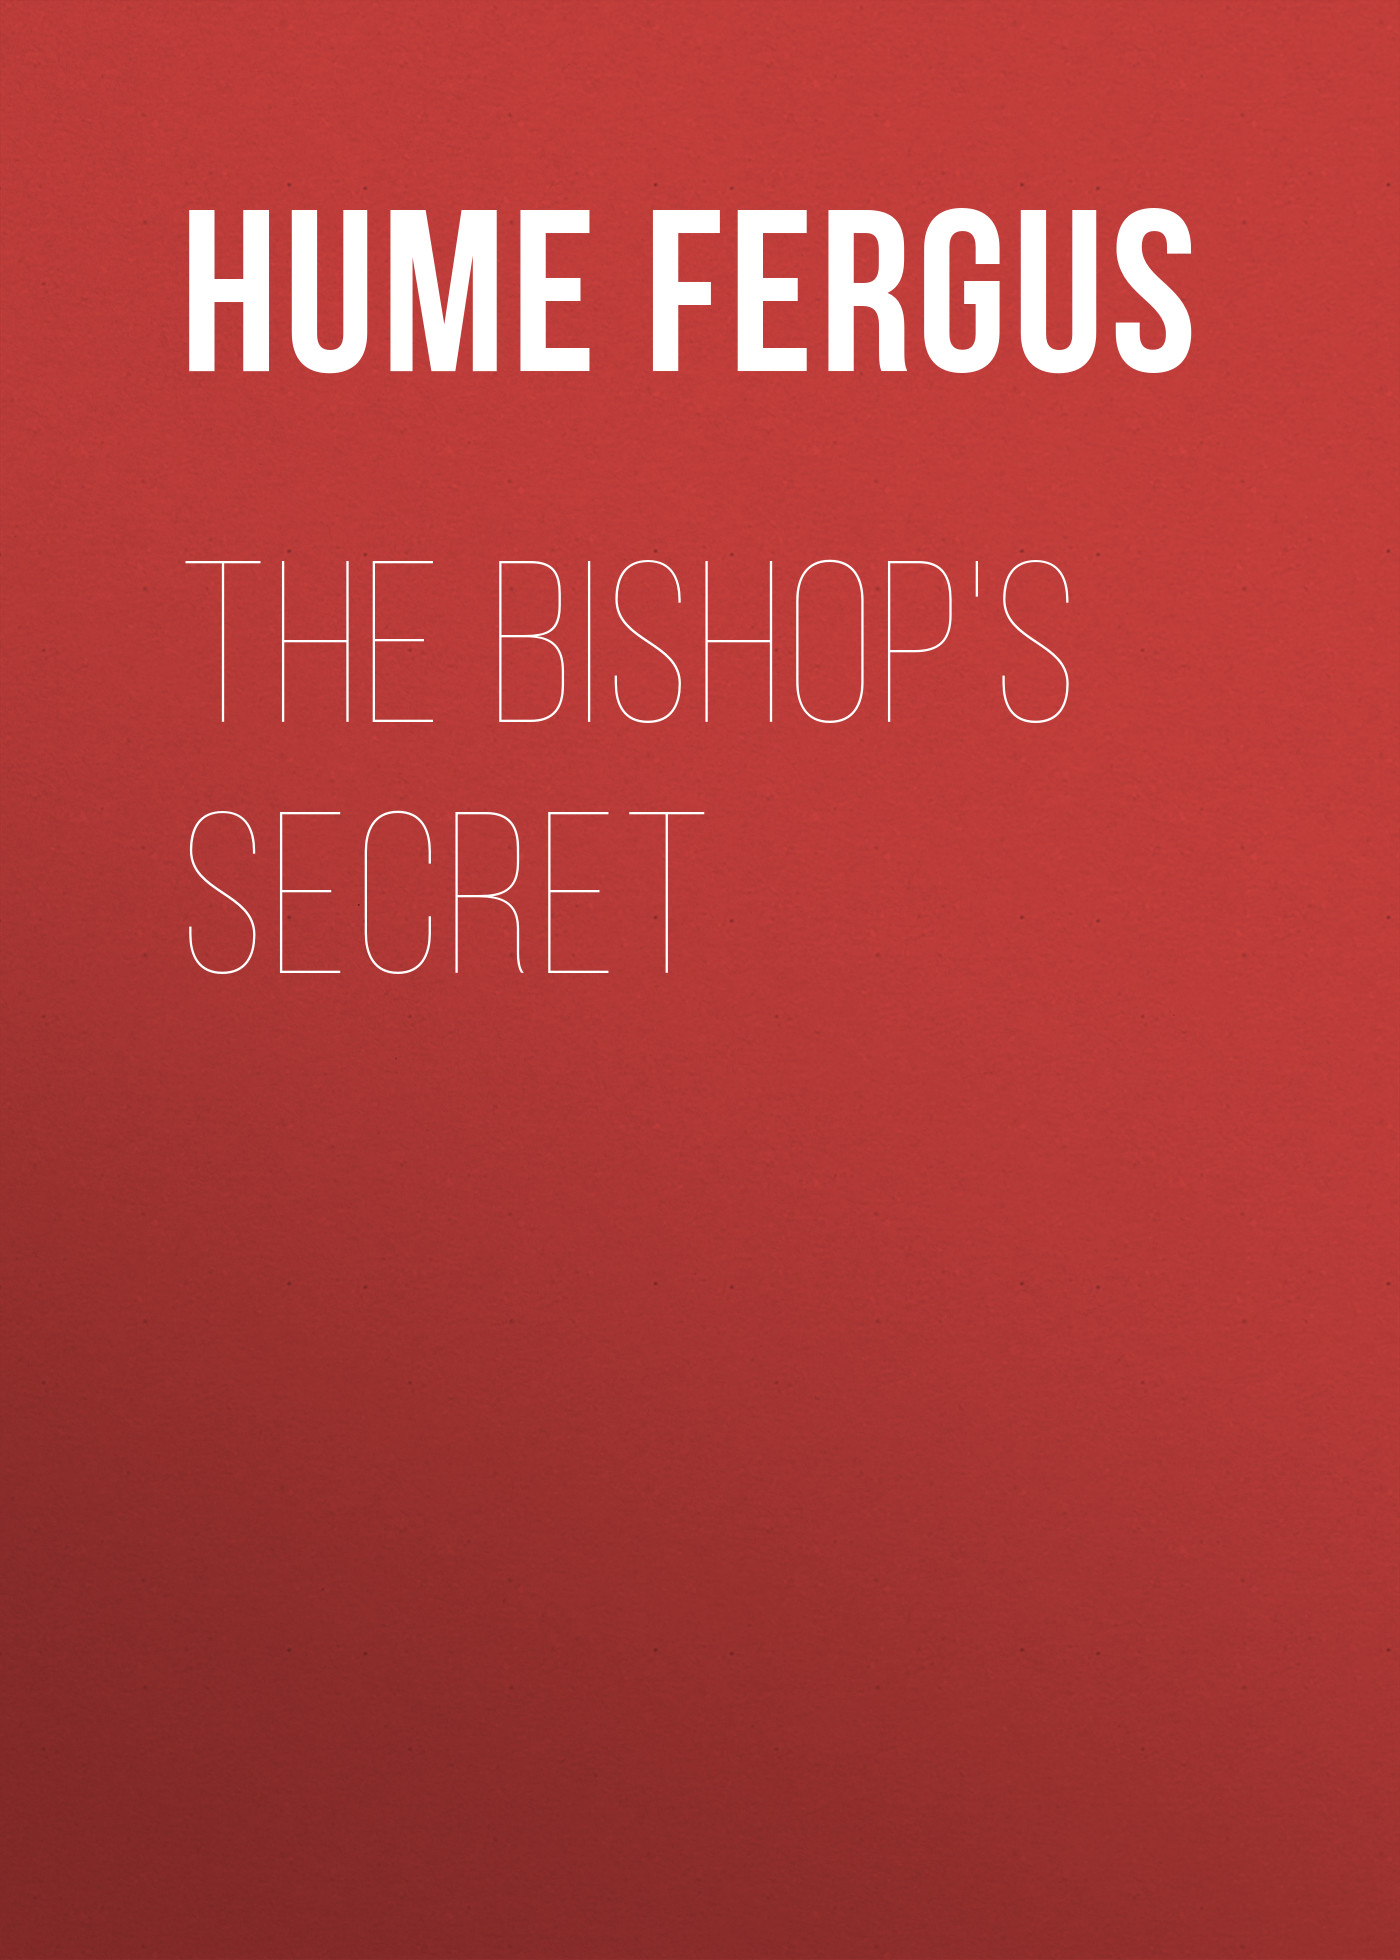 Книга The Bishop's Secret из серии , созданная Fergus Hume, может относится к жанру Классические детективы, Зарубежные детективы, Зарубежная классика, Иностранные языки. Стоимость электронной книги The Bishop's Secret с идентификатором 25561300 составляет 0 руб.